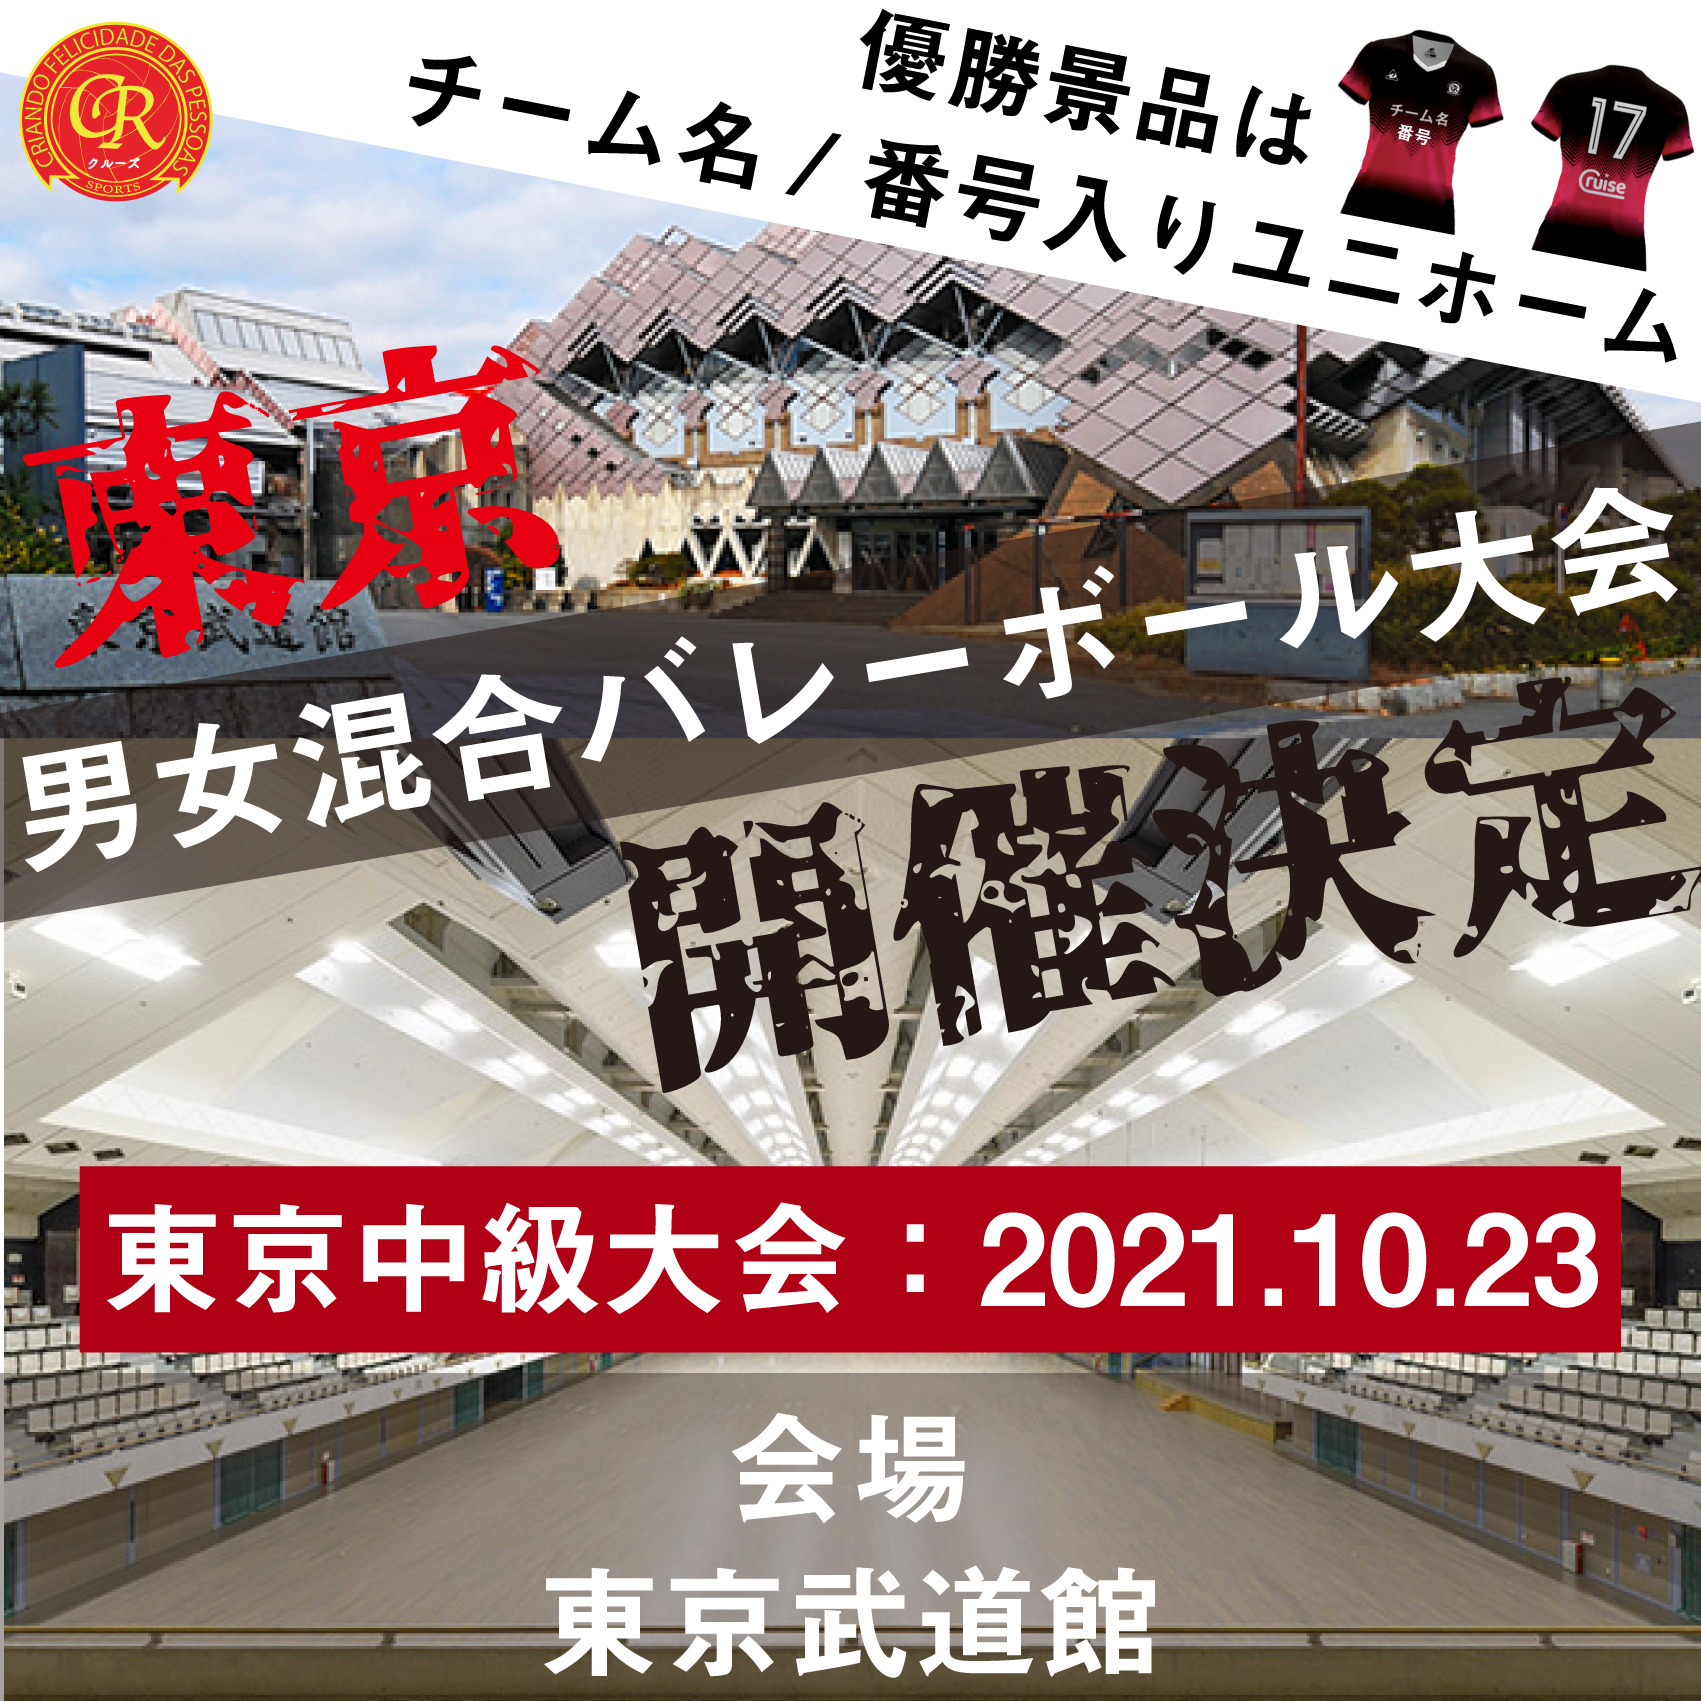 男女混合バレーボール大会を東京で開催 10 23東京武道館で開催